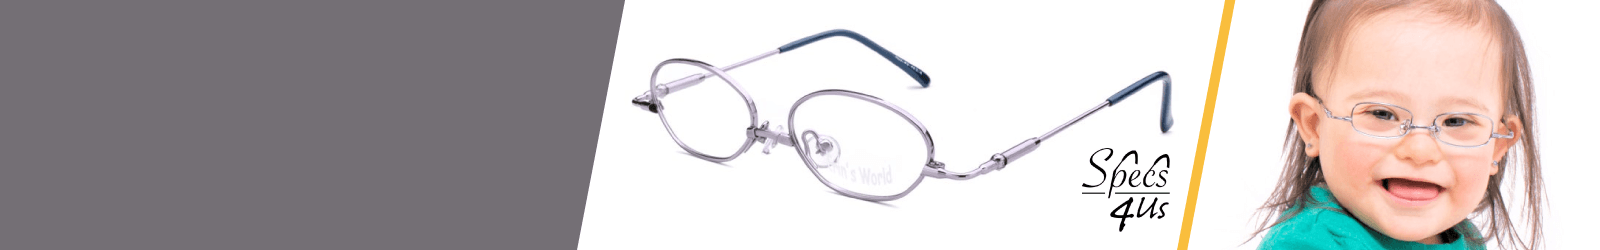 White Specs4us Kids Glasses